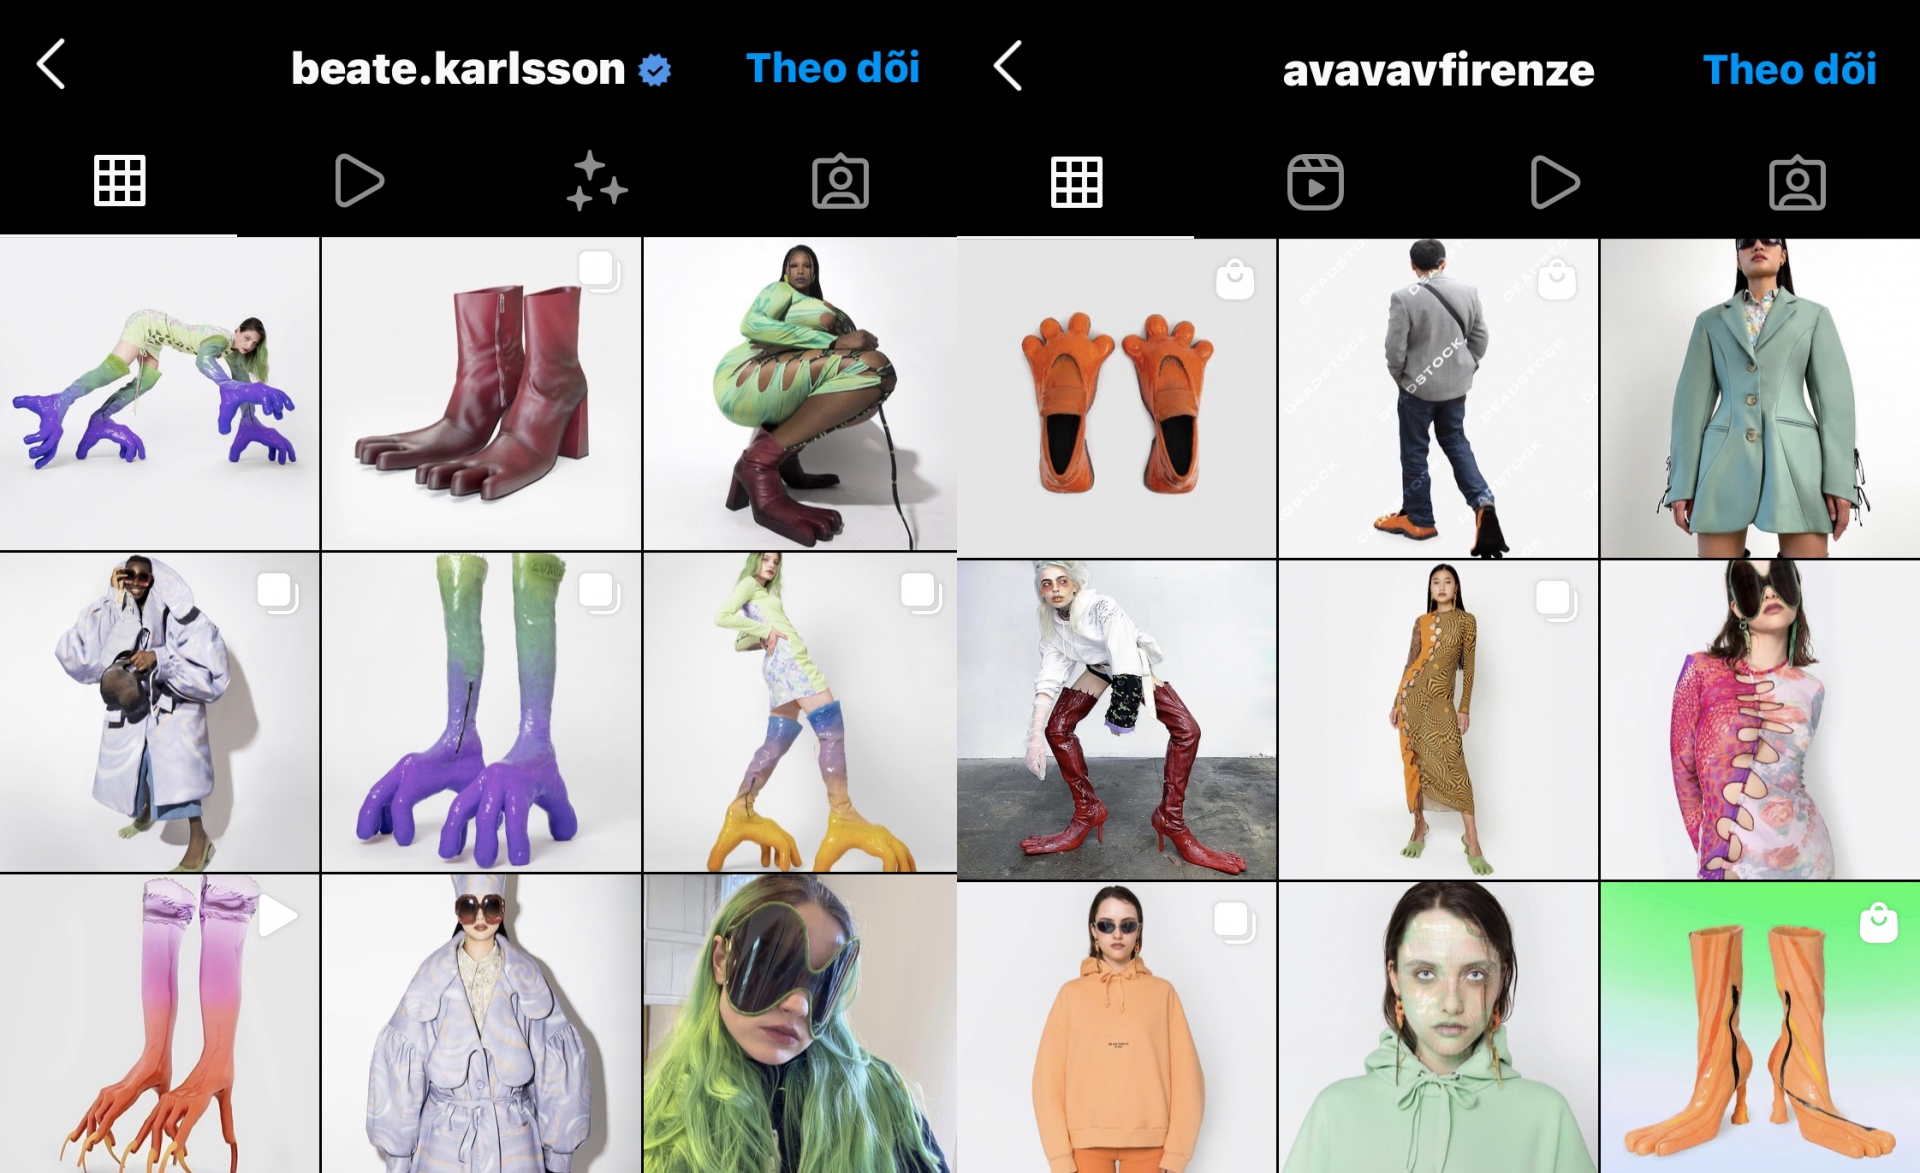 Bạn có thể ghé thăm Instagram @avavavfirenze hoặc @beate.karlsson để xem nhiều hơn những hình ảnh về bộ sưu tập. 